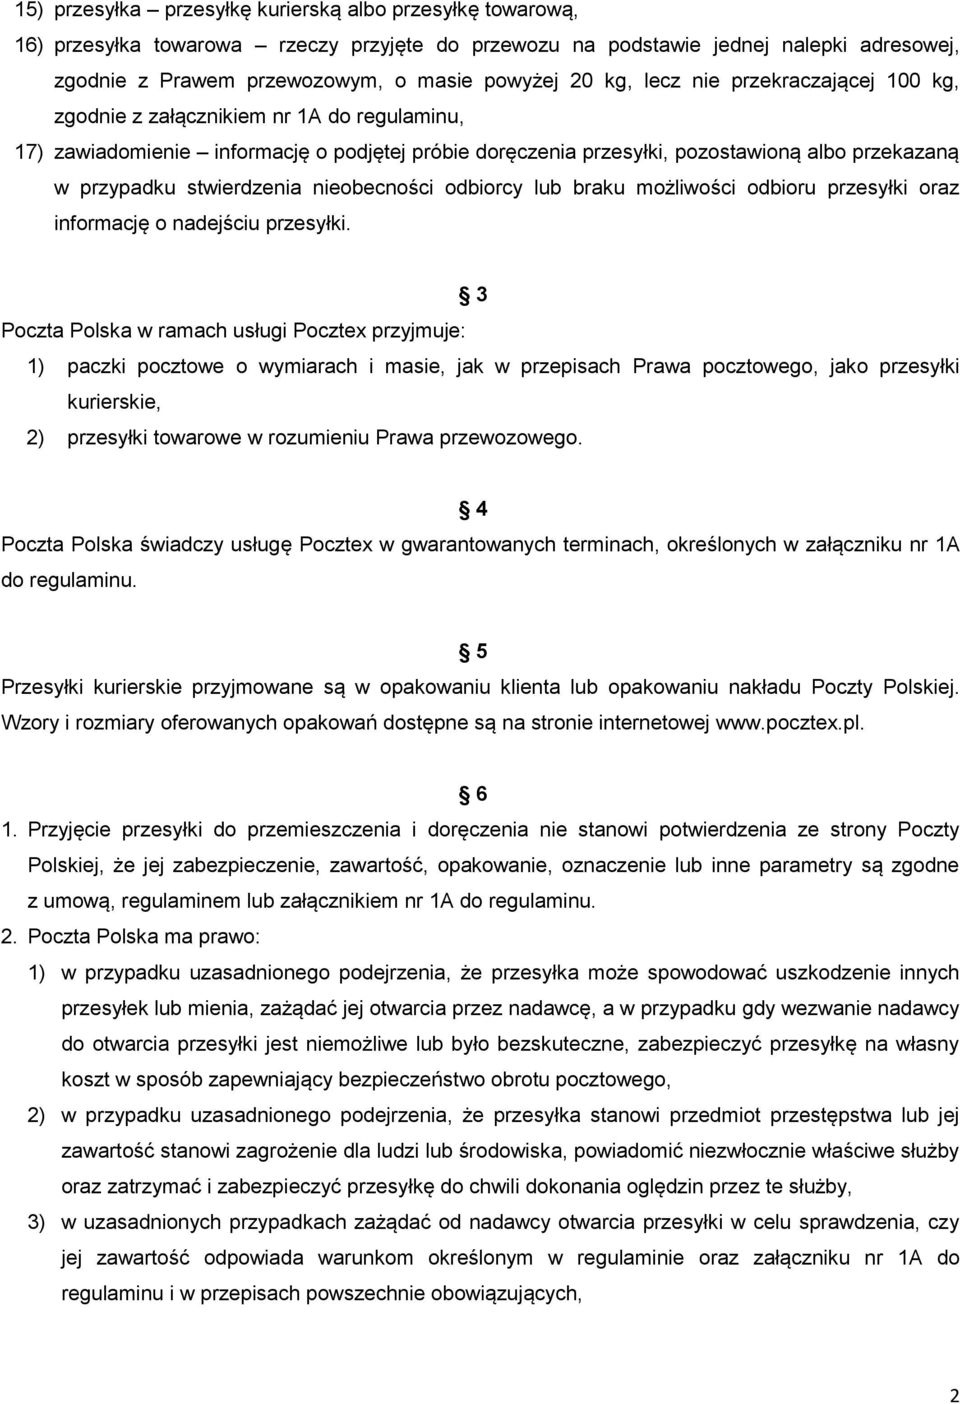 Regulamin świadczenia usługi Pocztex w obrocie krajowym Zasady ogólne - PDF  Darmowe pobieranie